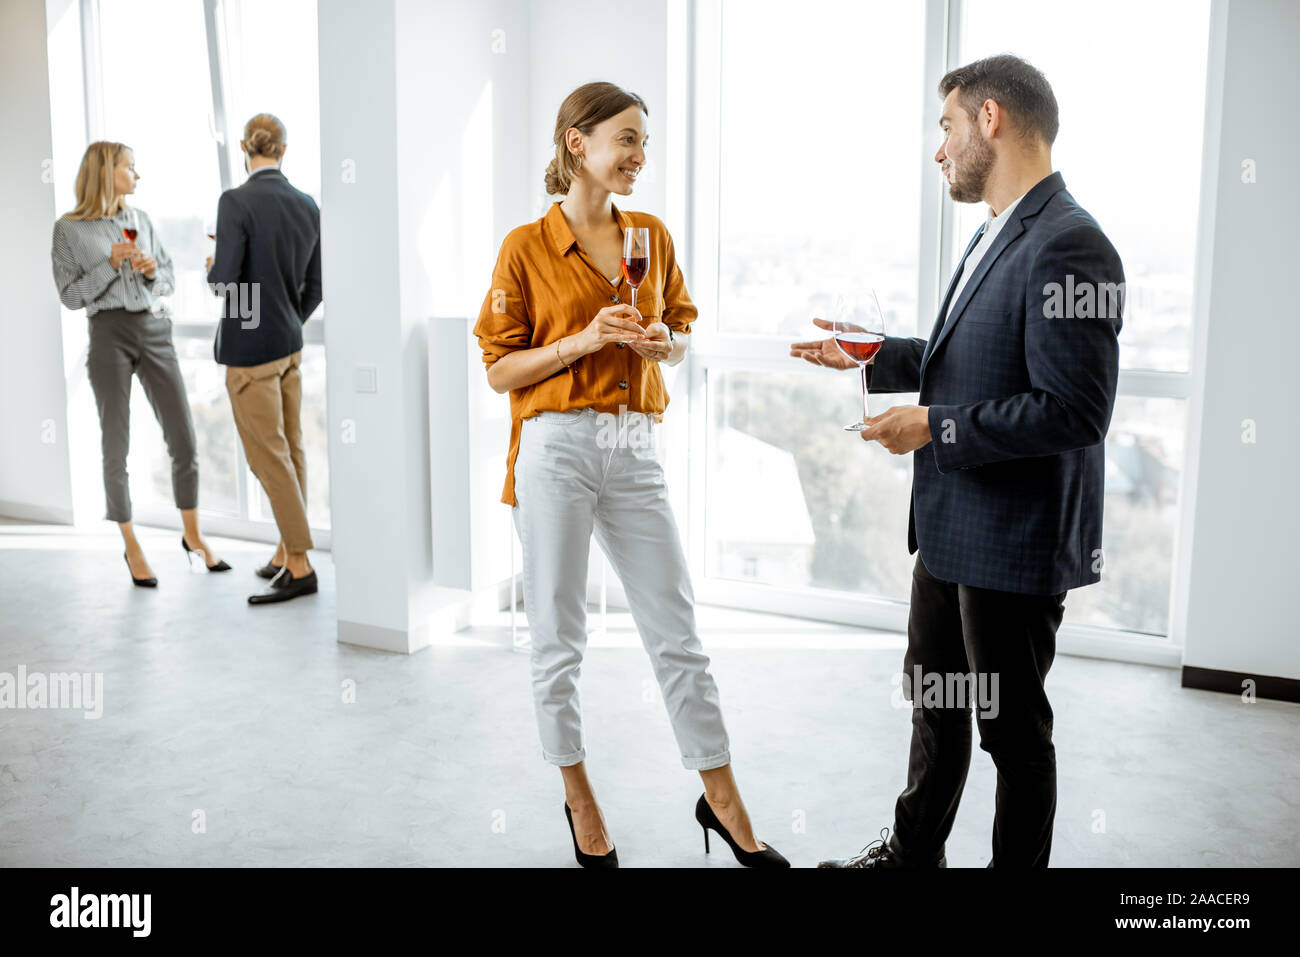 Les jeunes gens habillés avec élégance dans le couloir blanc de réunion ou d'exposition, de parler et de boire du vin pendant un certain événement informel Banque D'Images